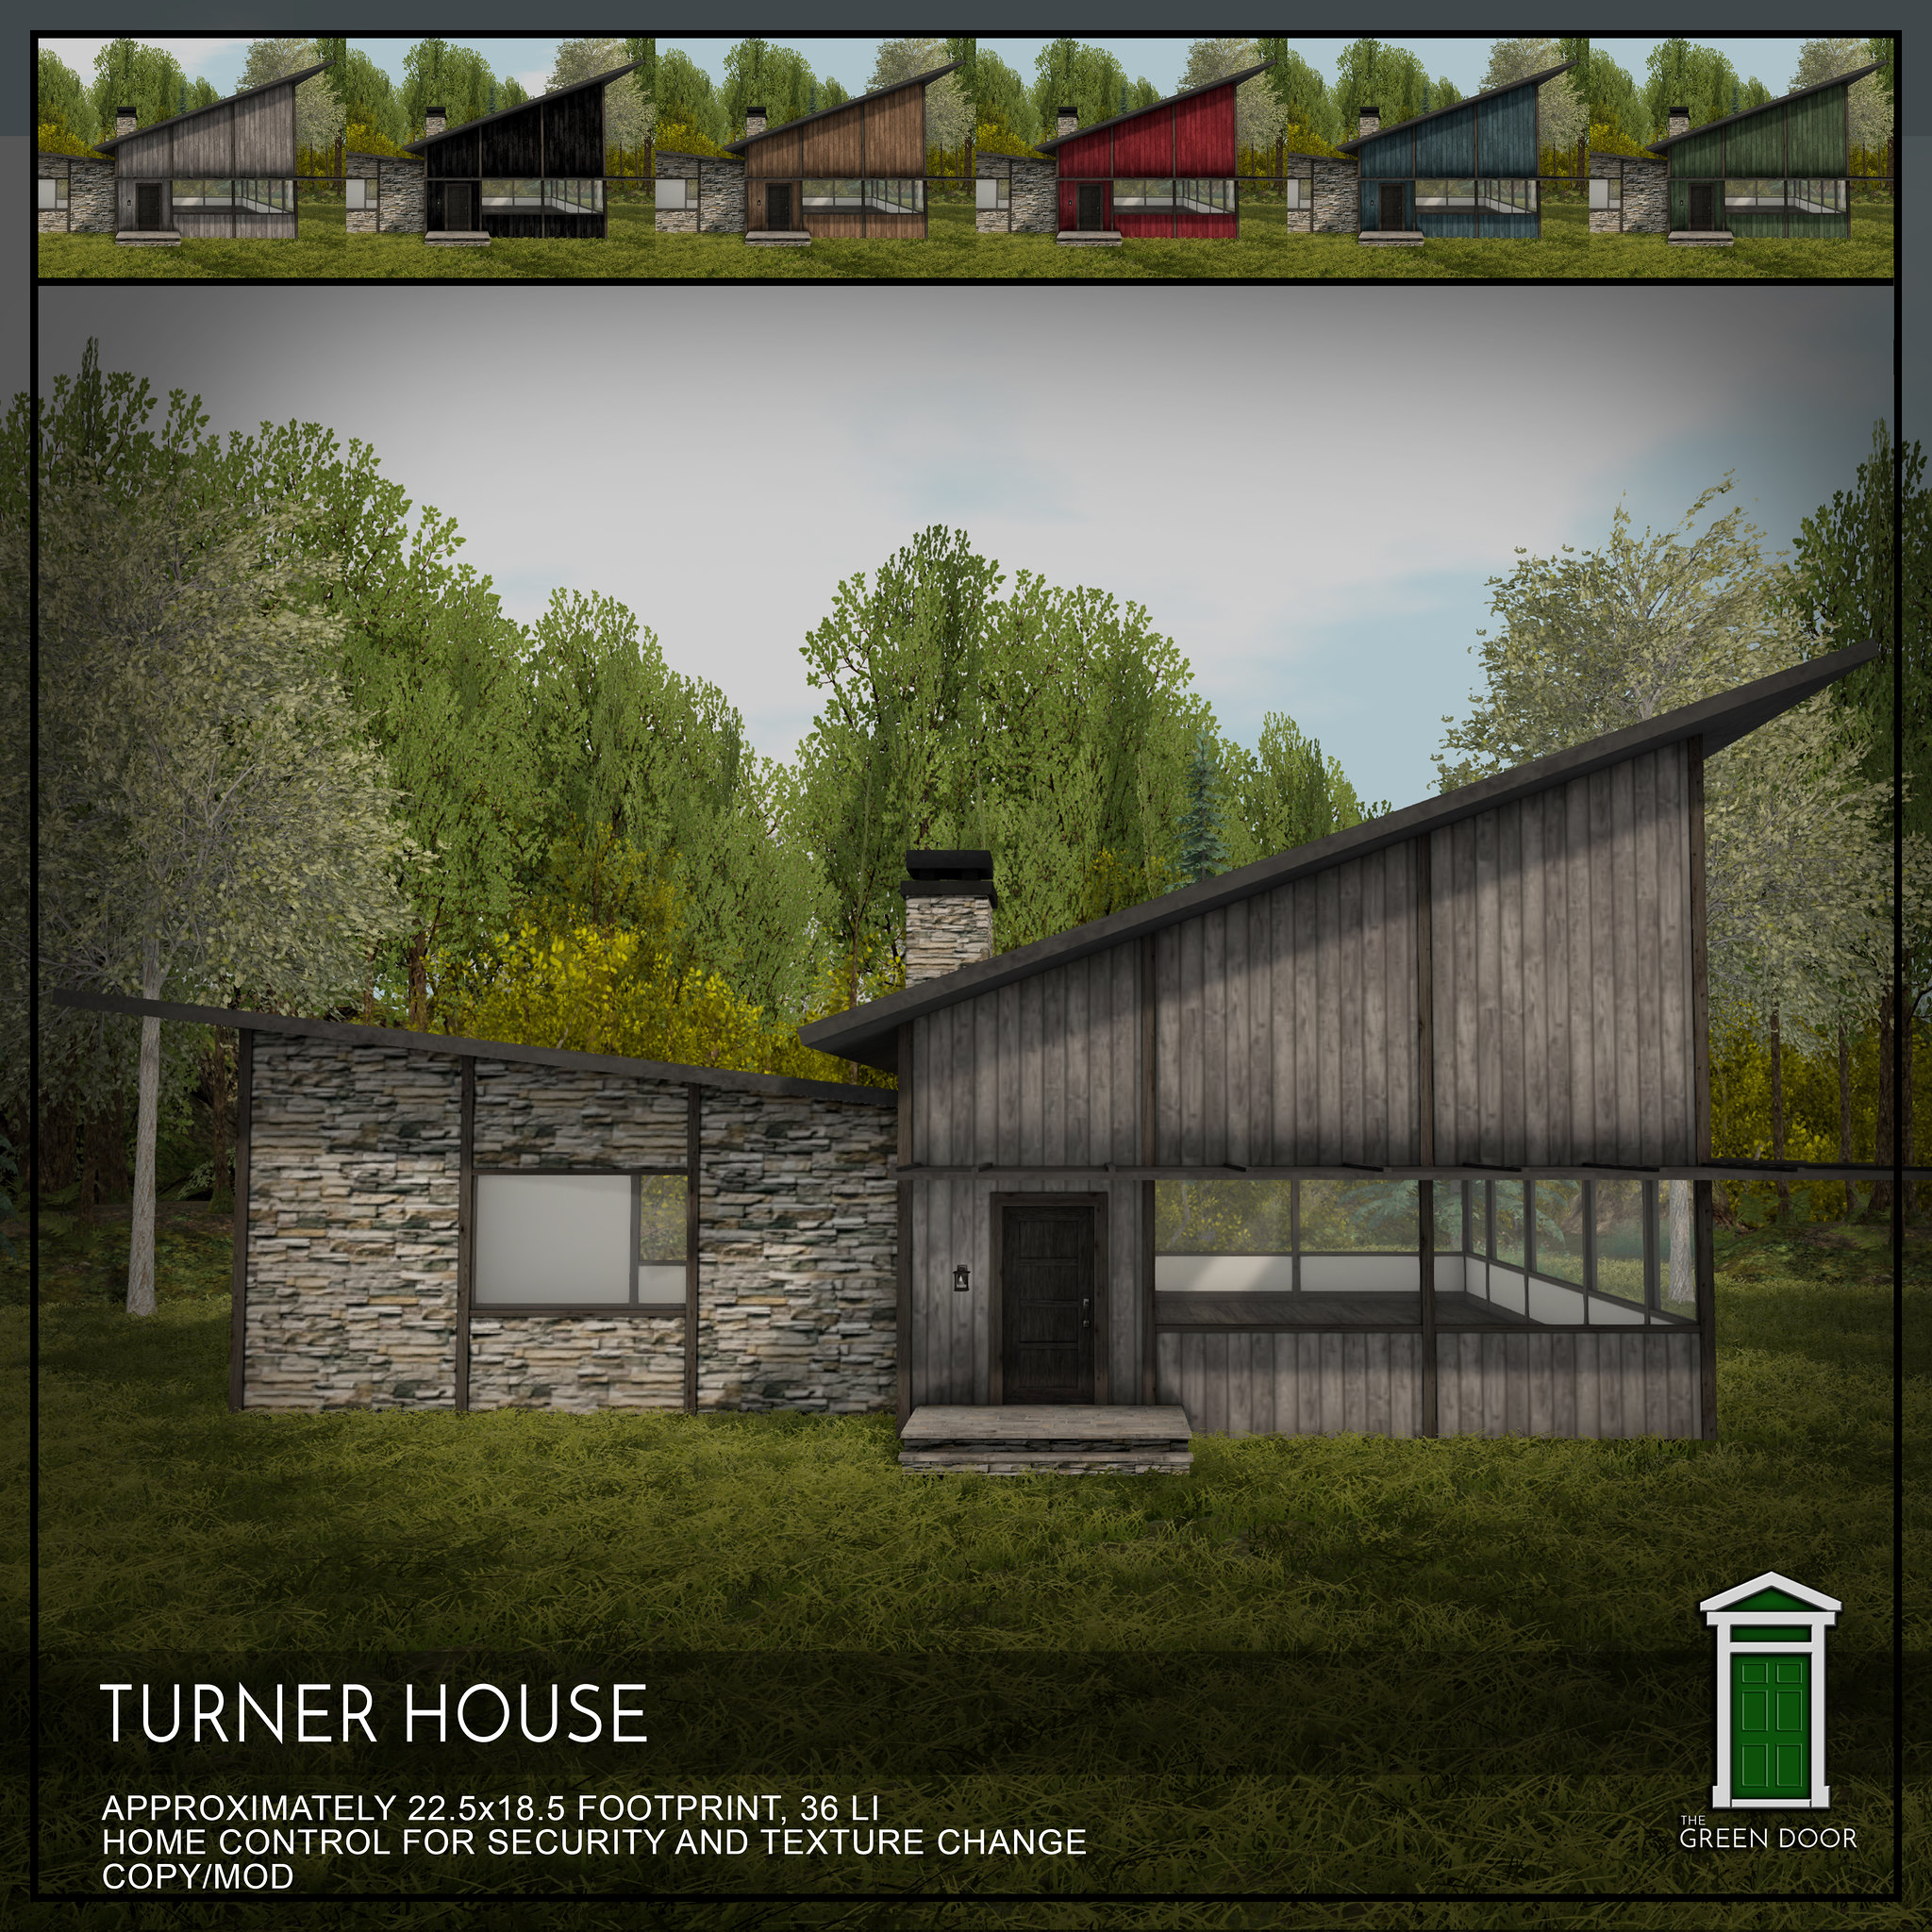 The Green Door – Turner House